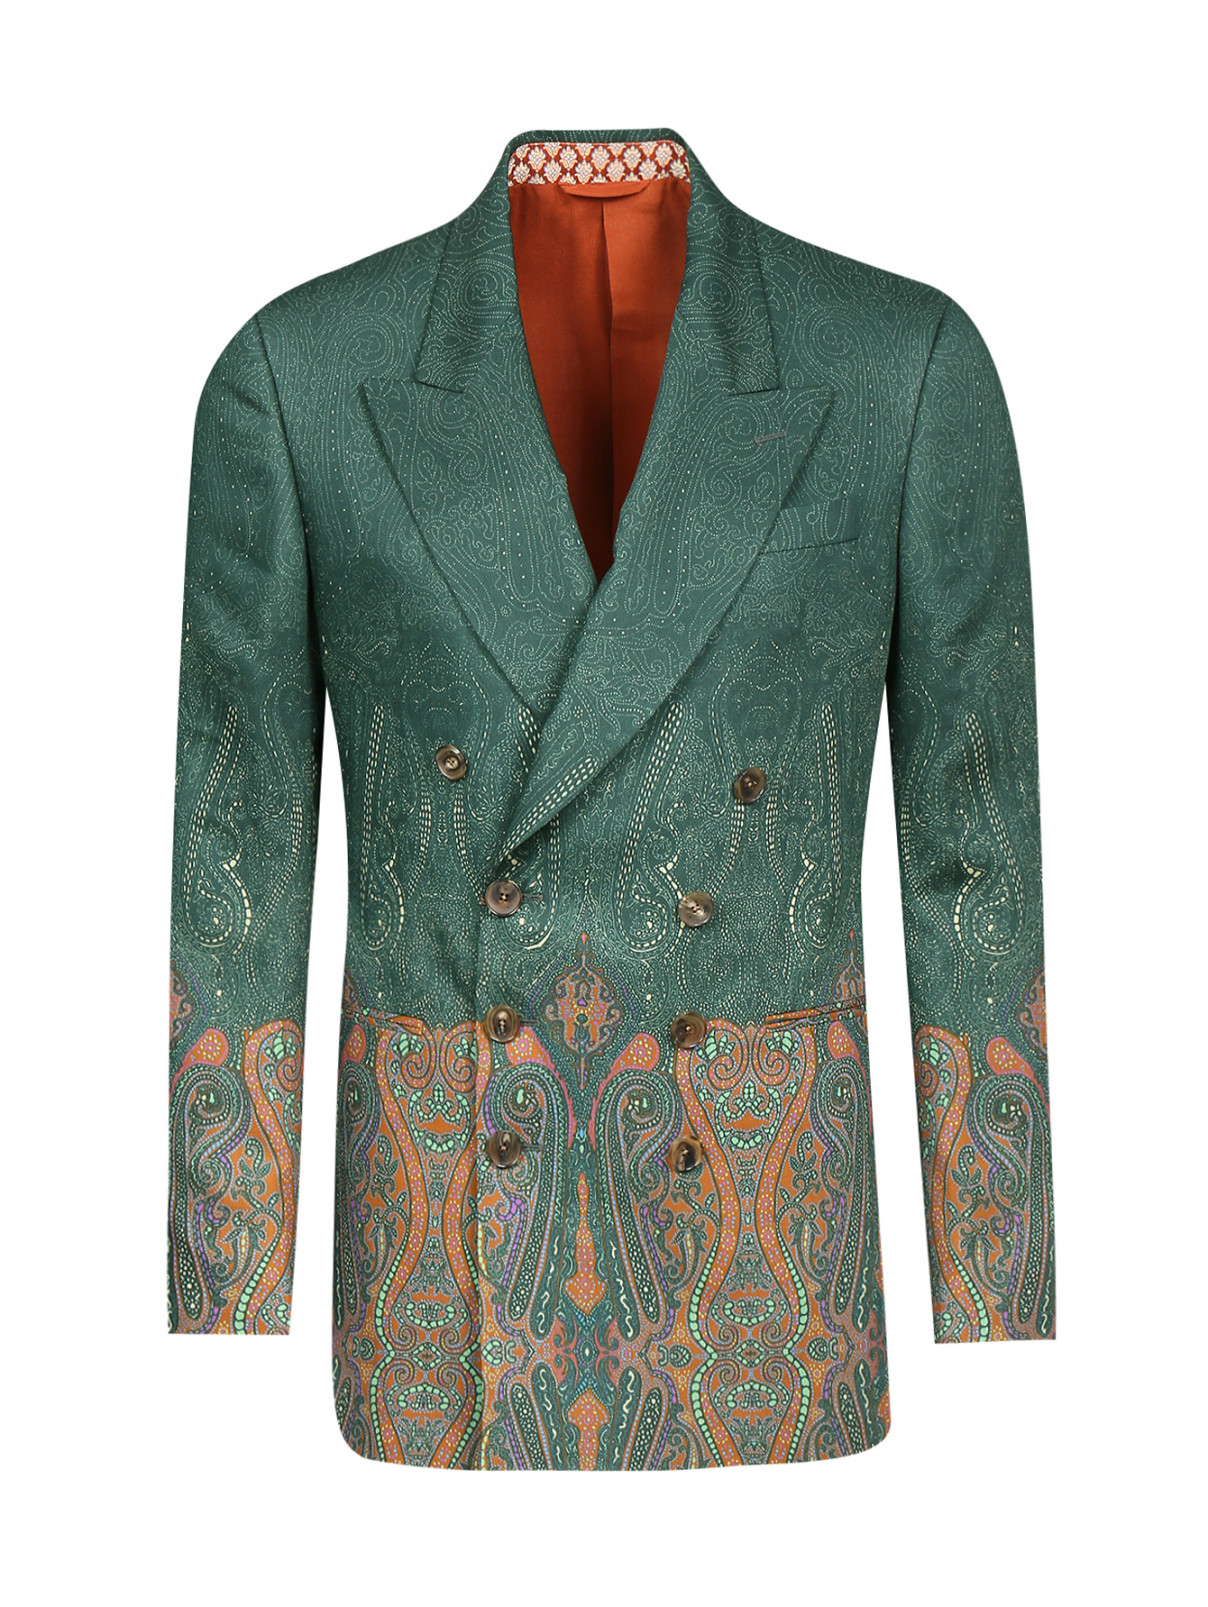 Пиджак двубортный из шерсти с узором Etro  –  Общий вид  – Цвет:  Зеленый